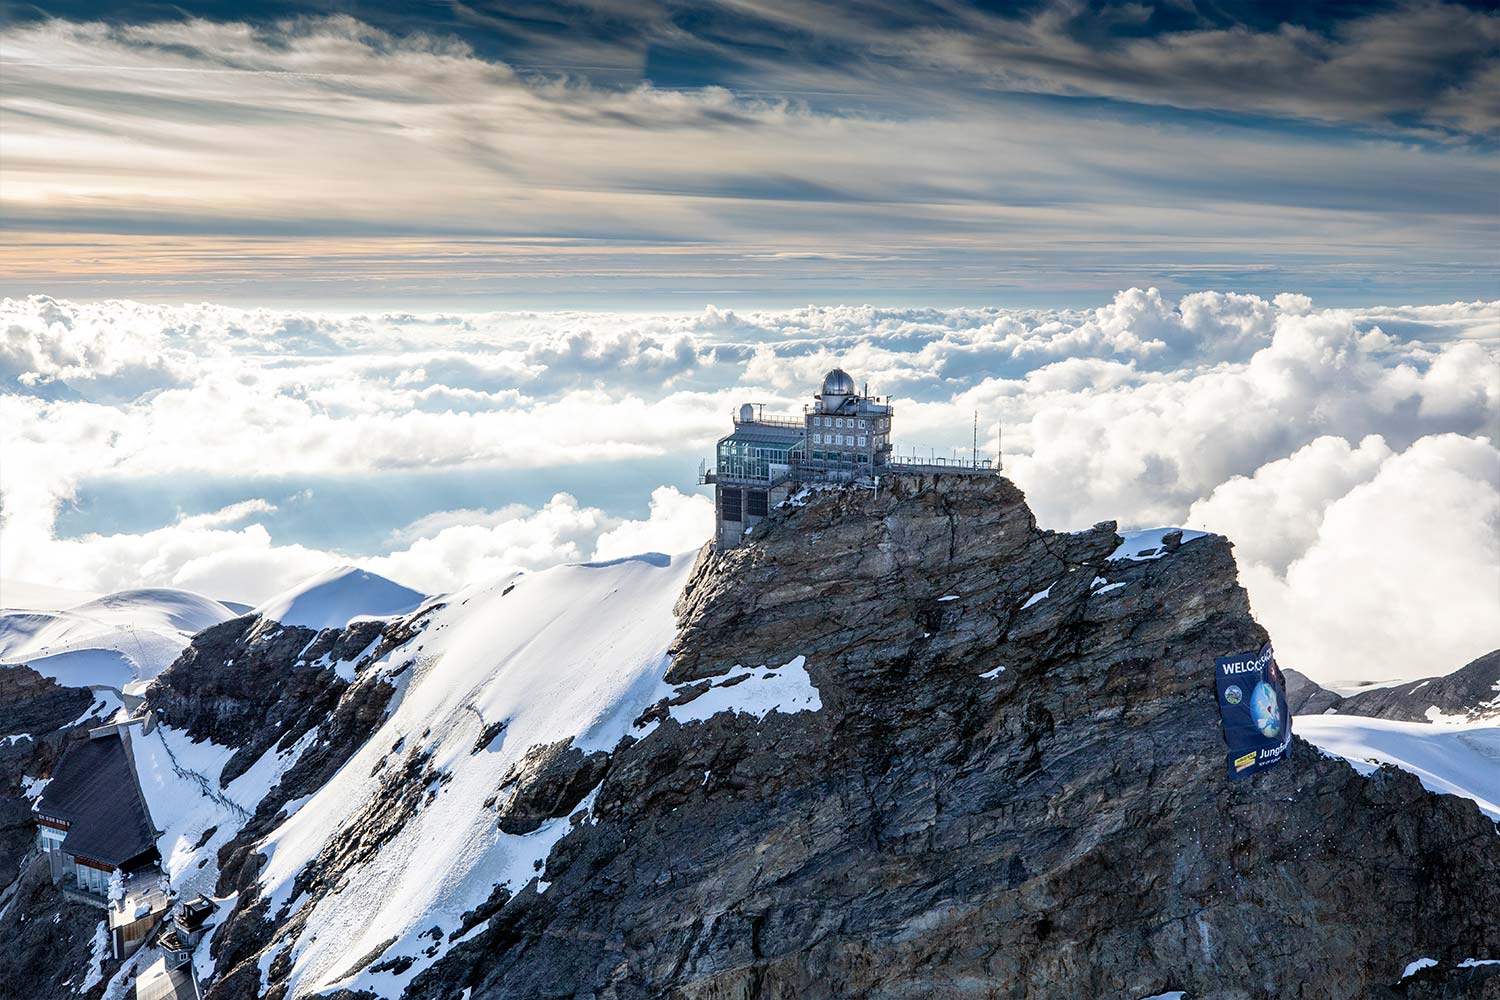 Jungfraujoch "Top of Europe"